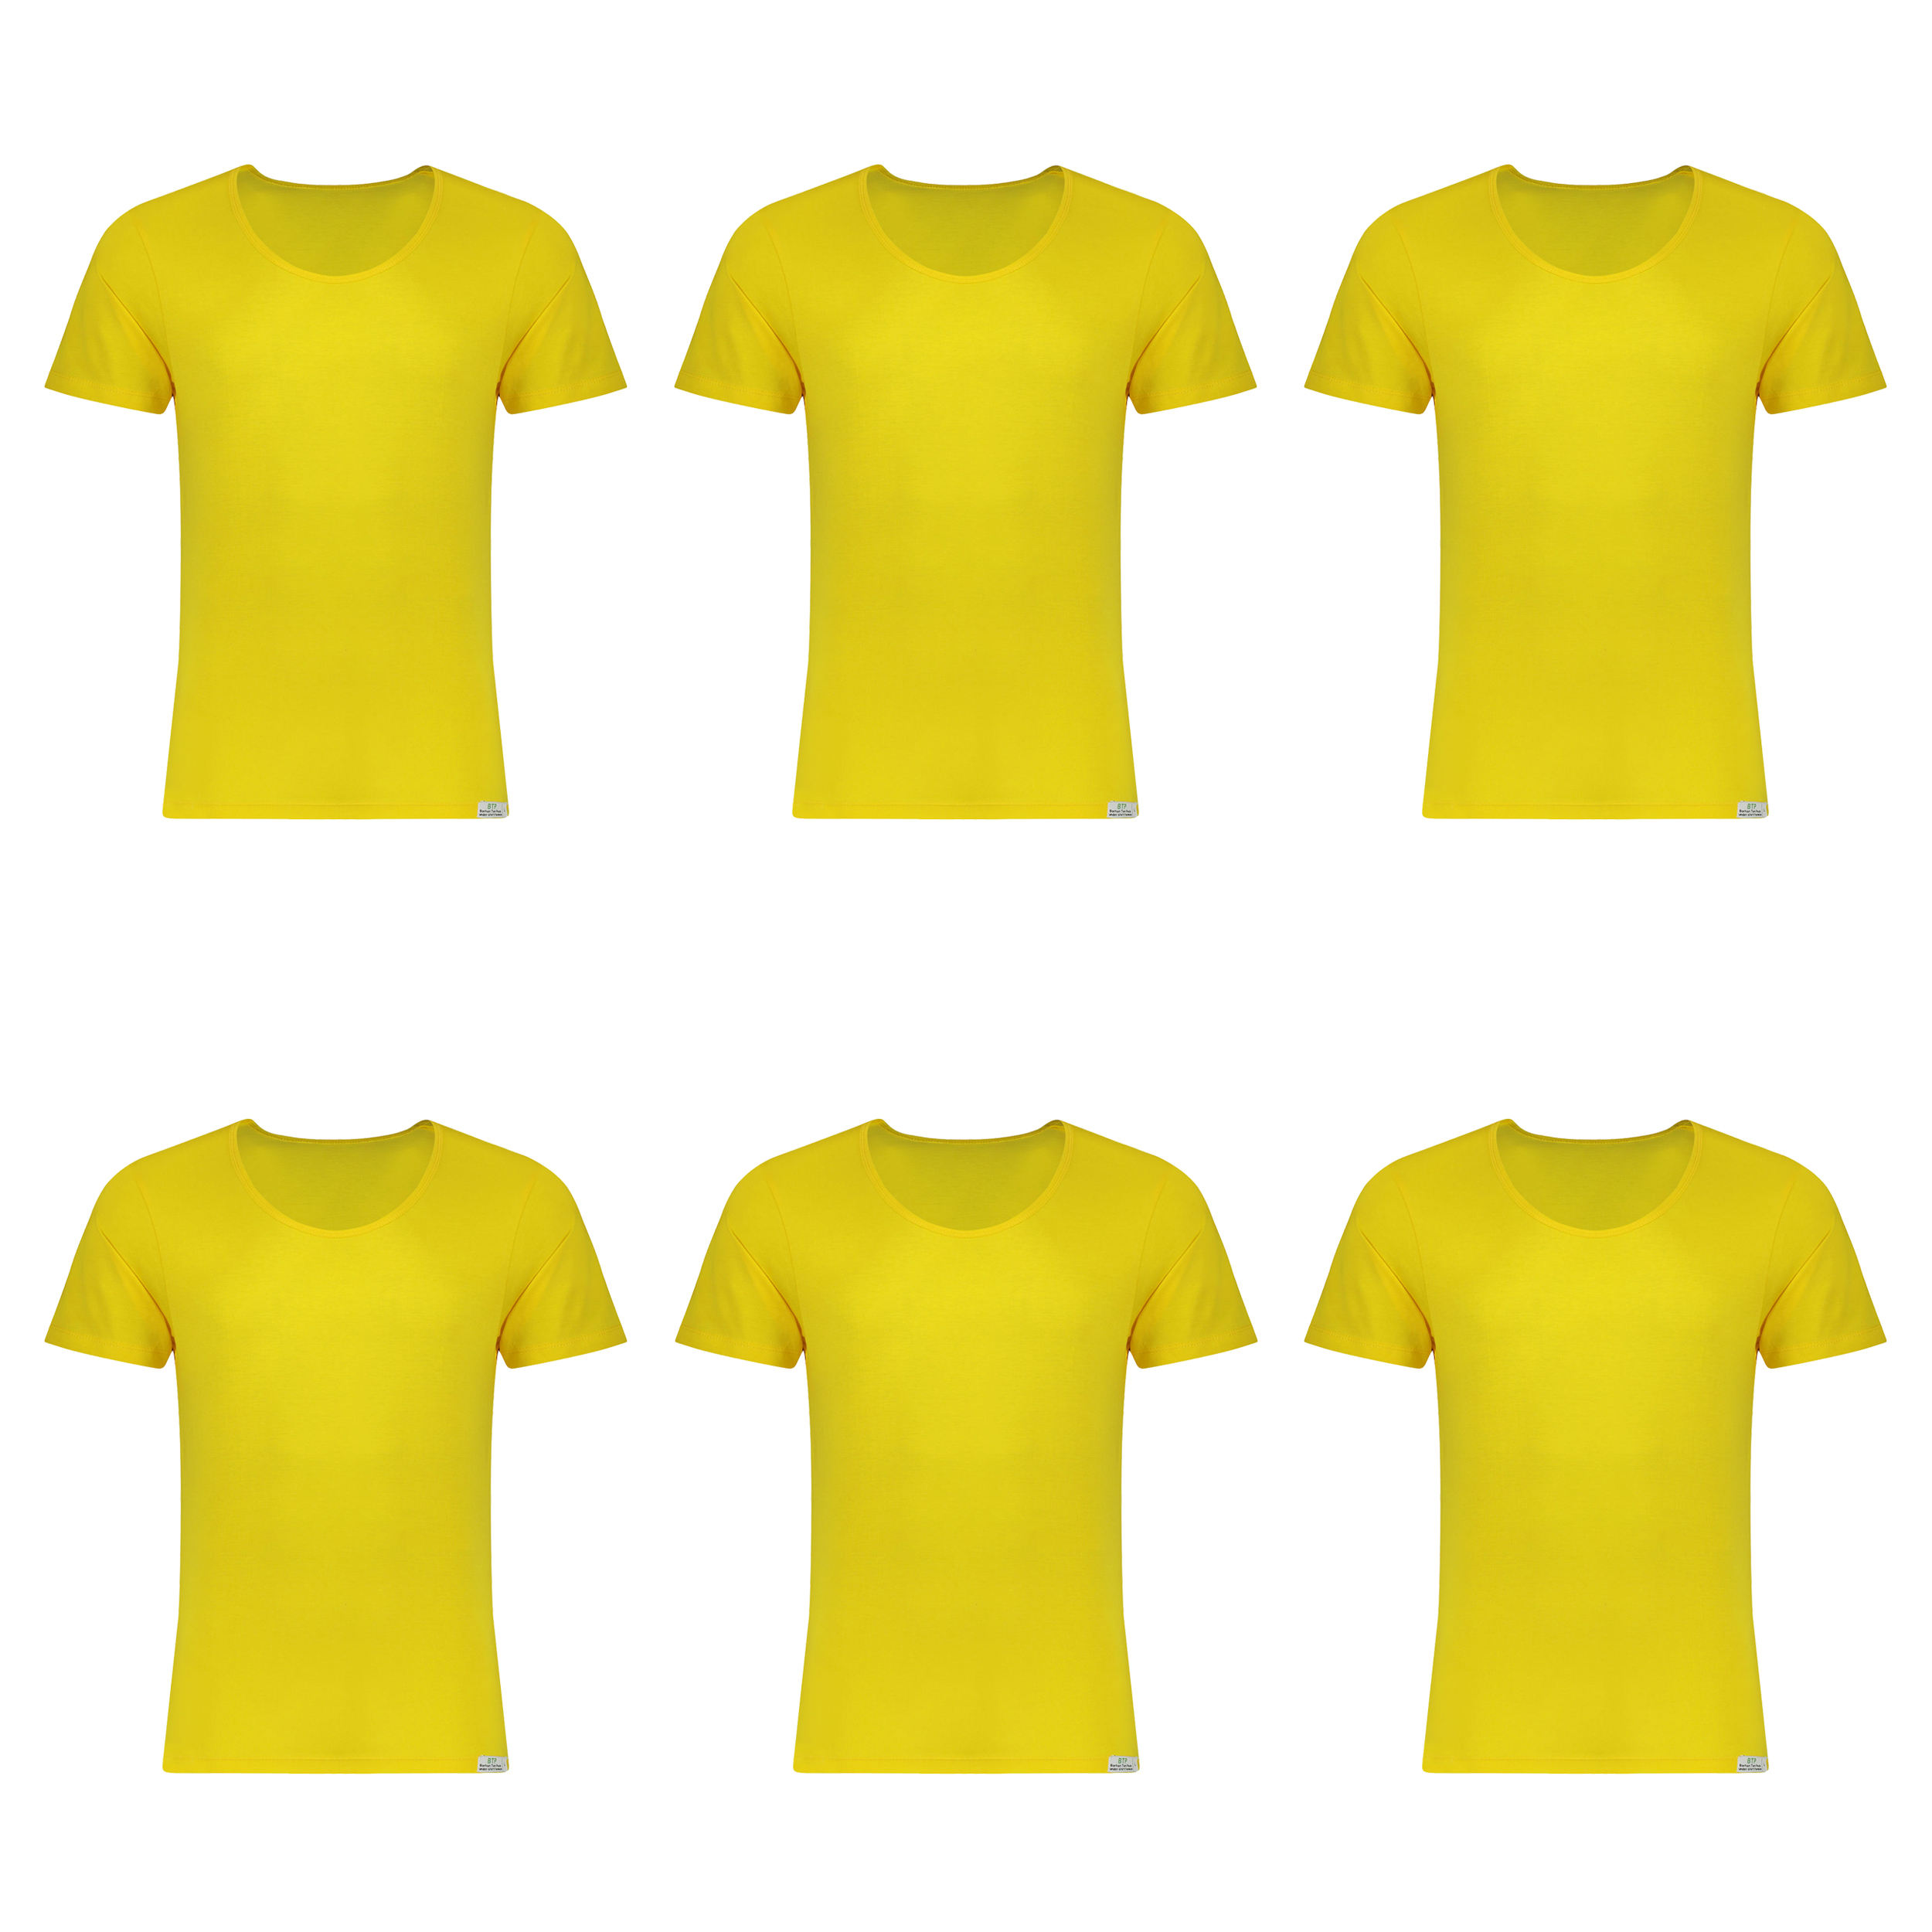 زیرپوش پسرانه برهان تن پوش مدل آستین دار 5-02  رنگ زرد بسته 6 عددی